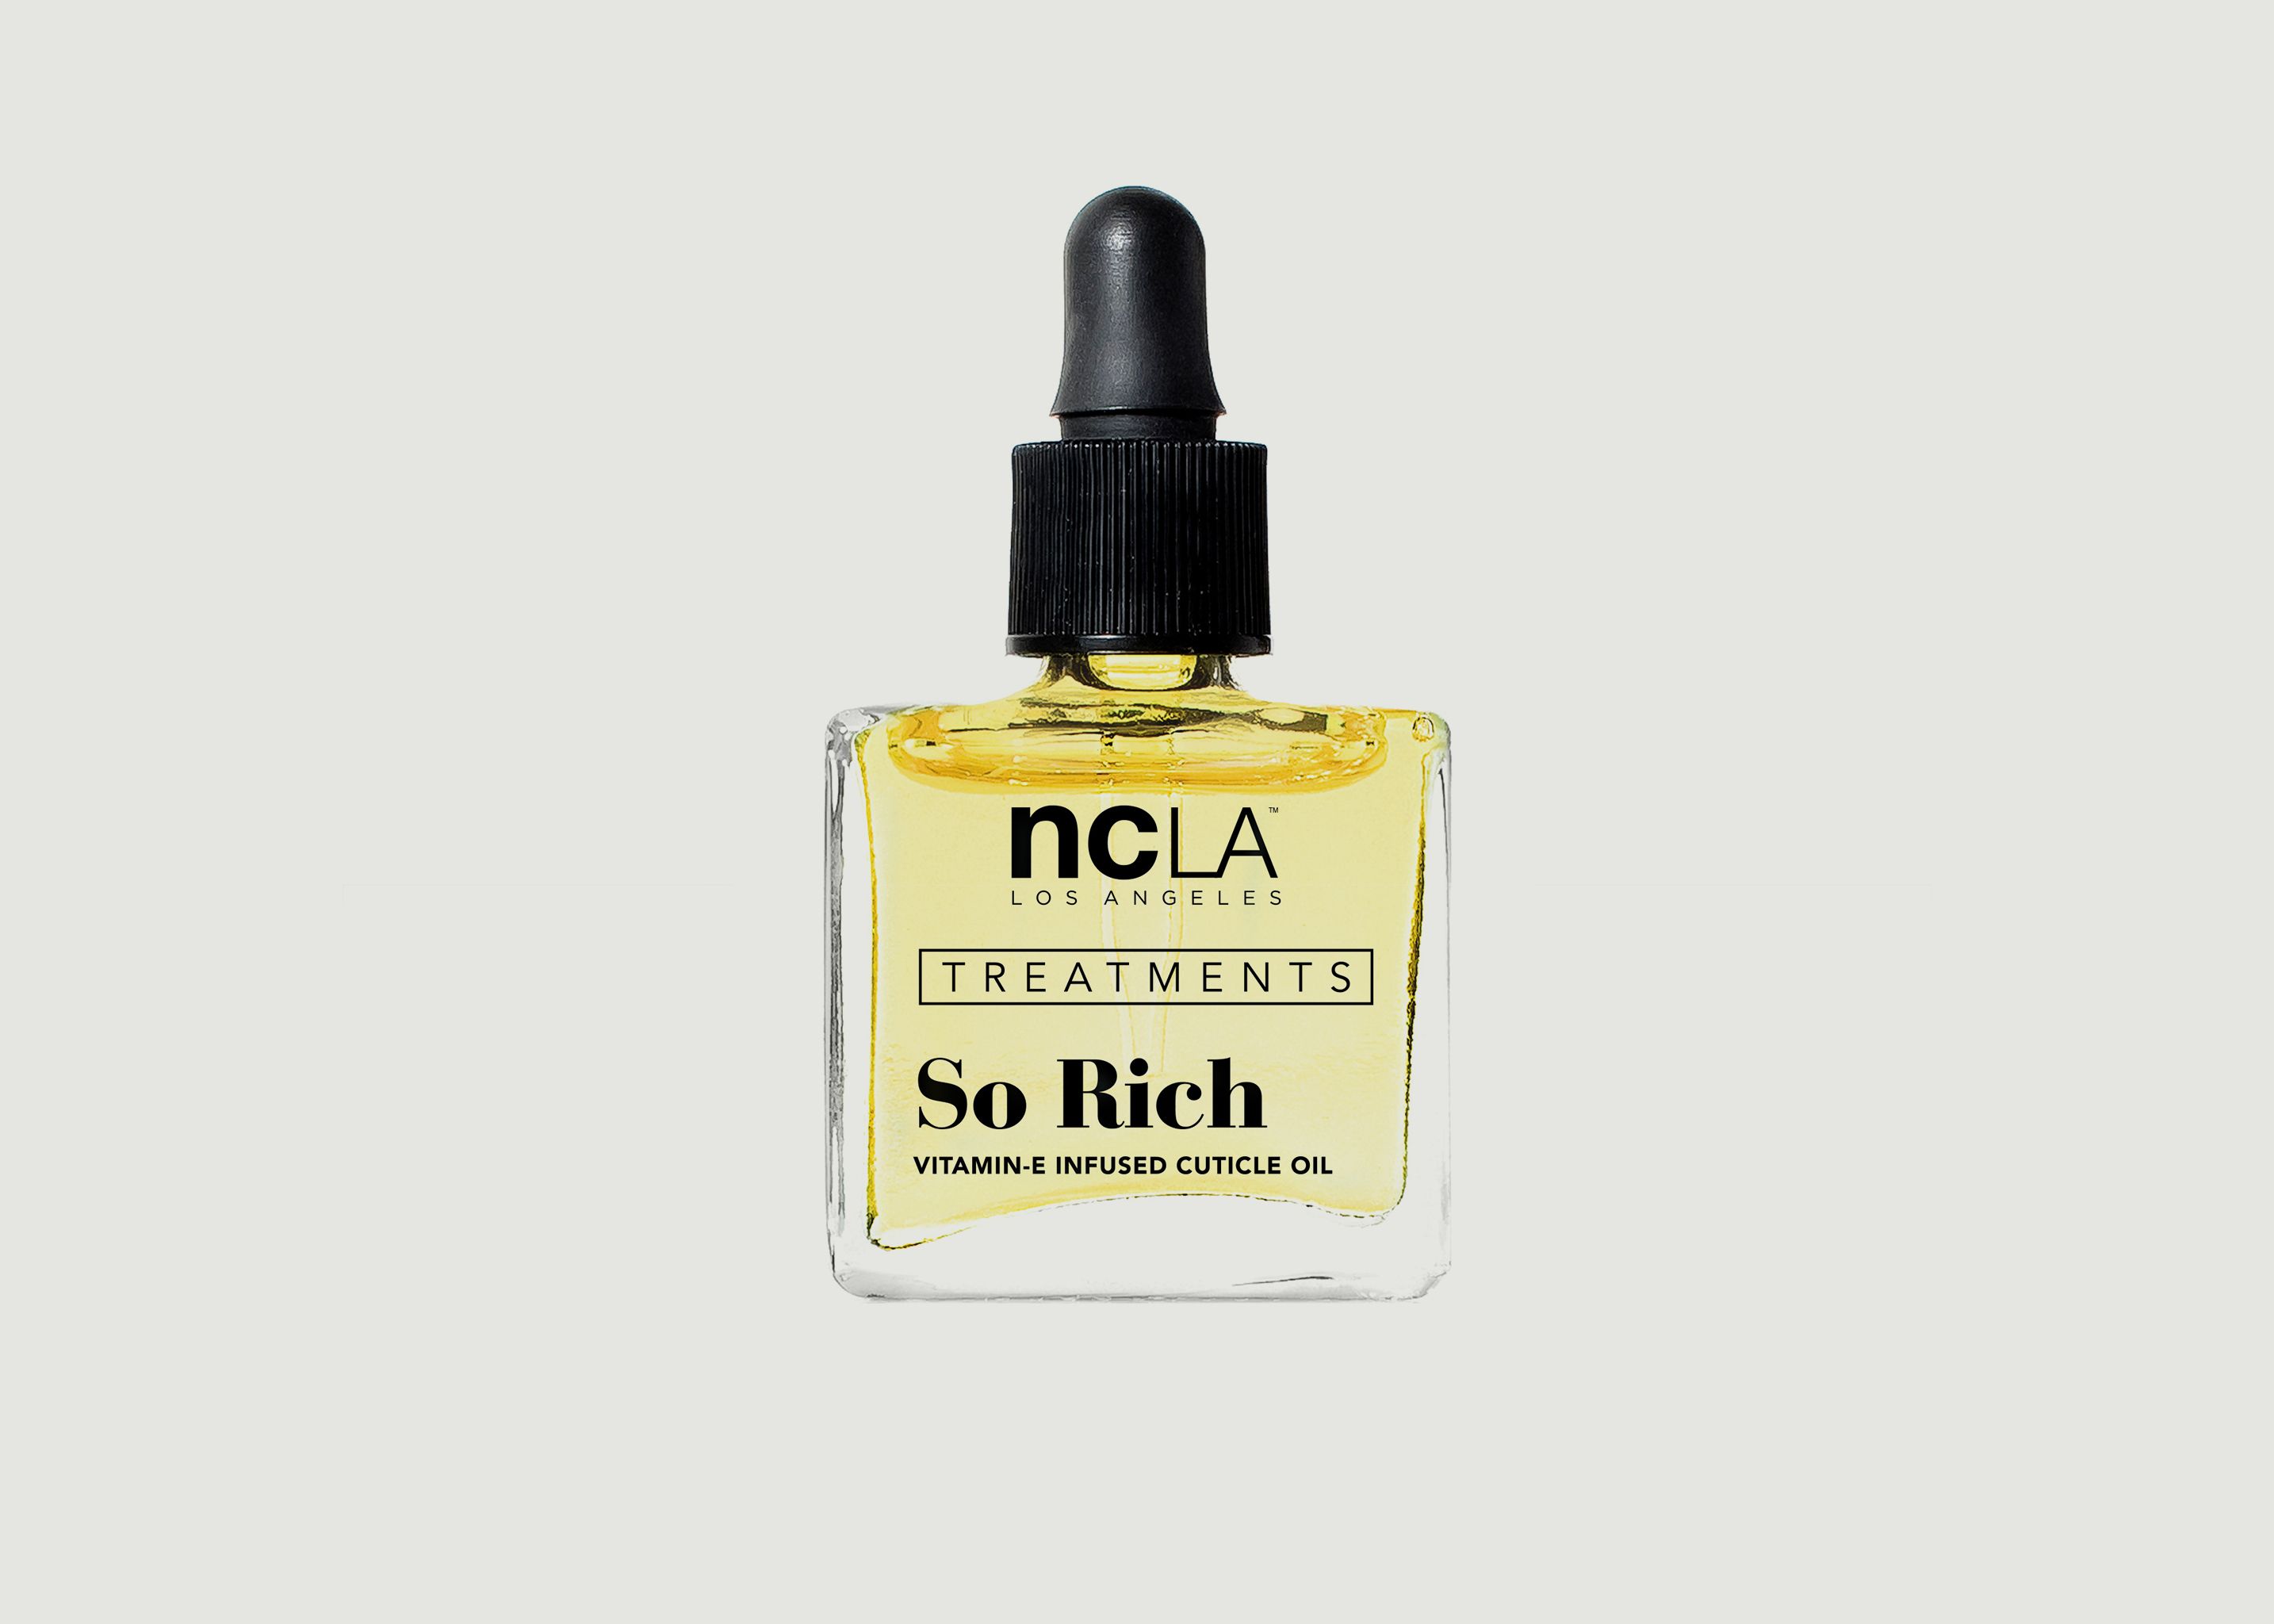 So rich nail oil - NCLA